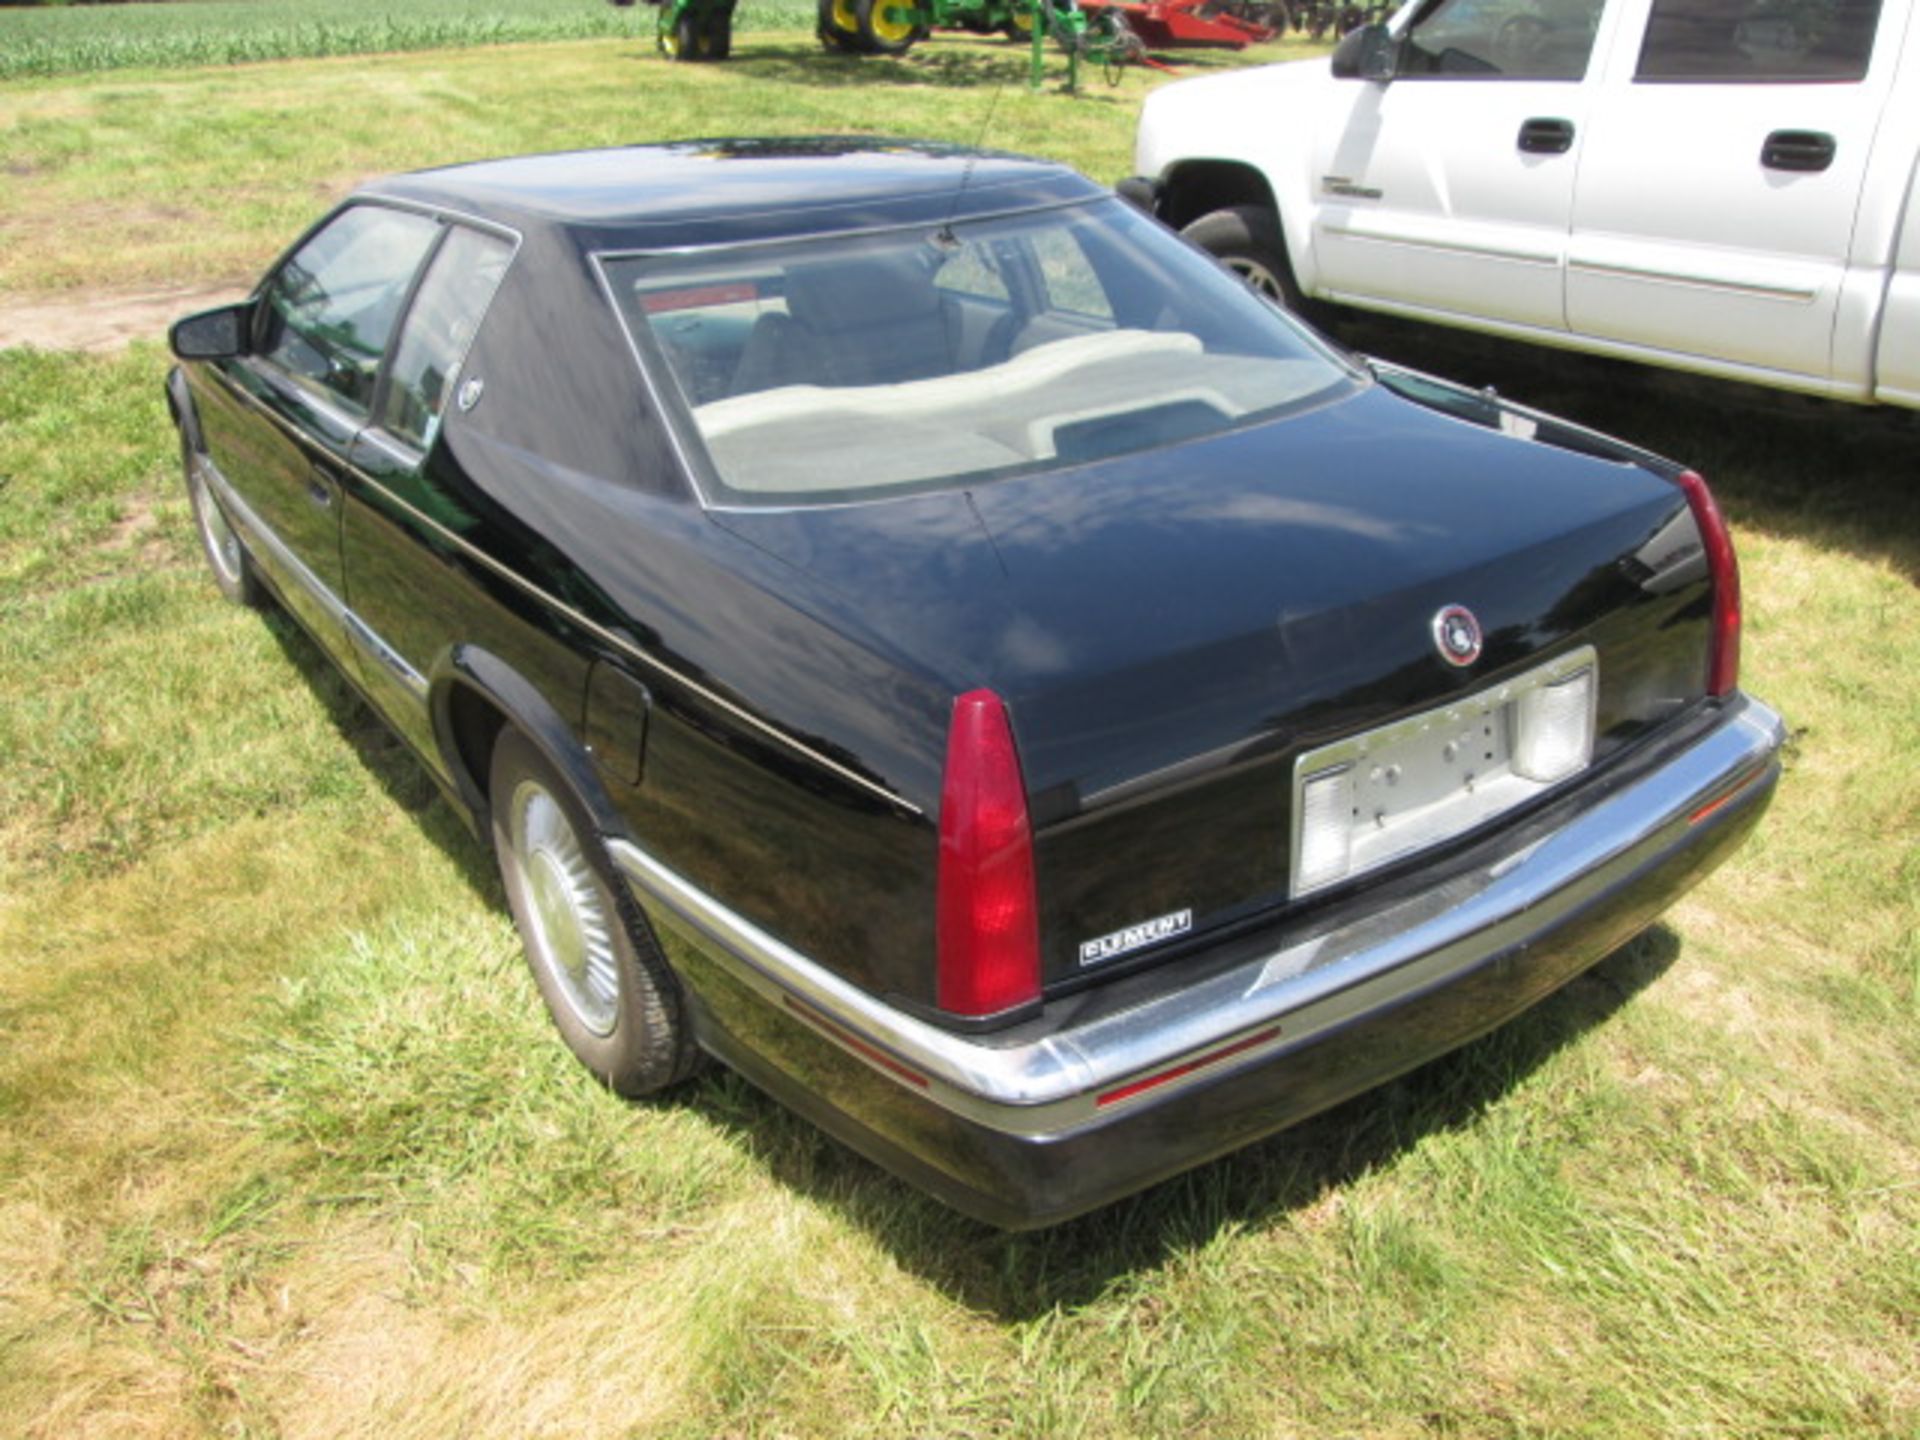 1992 Cadillac Eldorado - Image 4 of 7